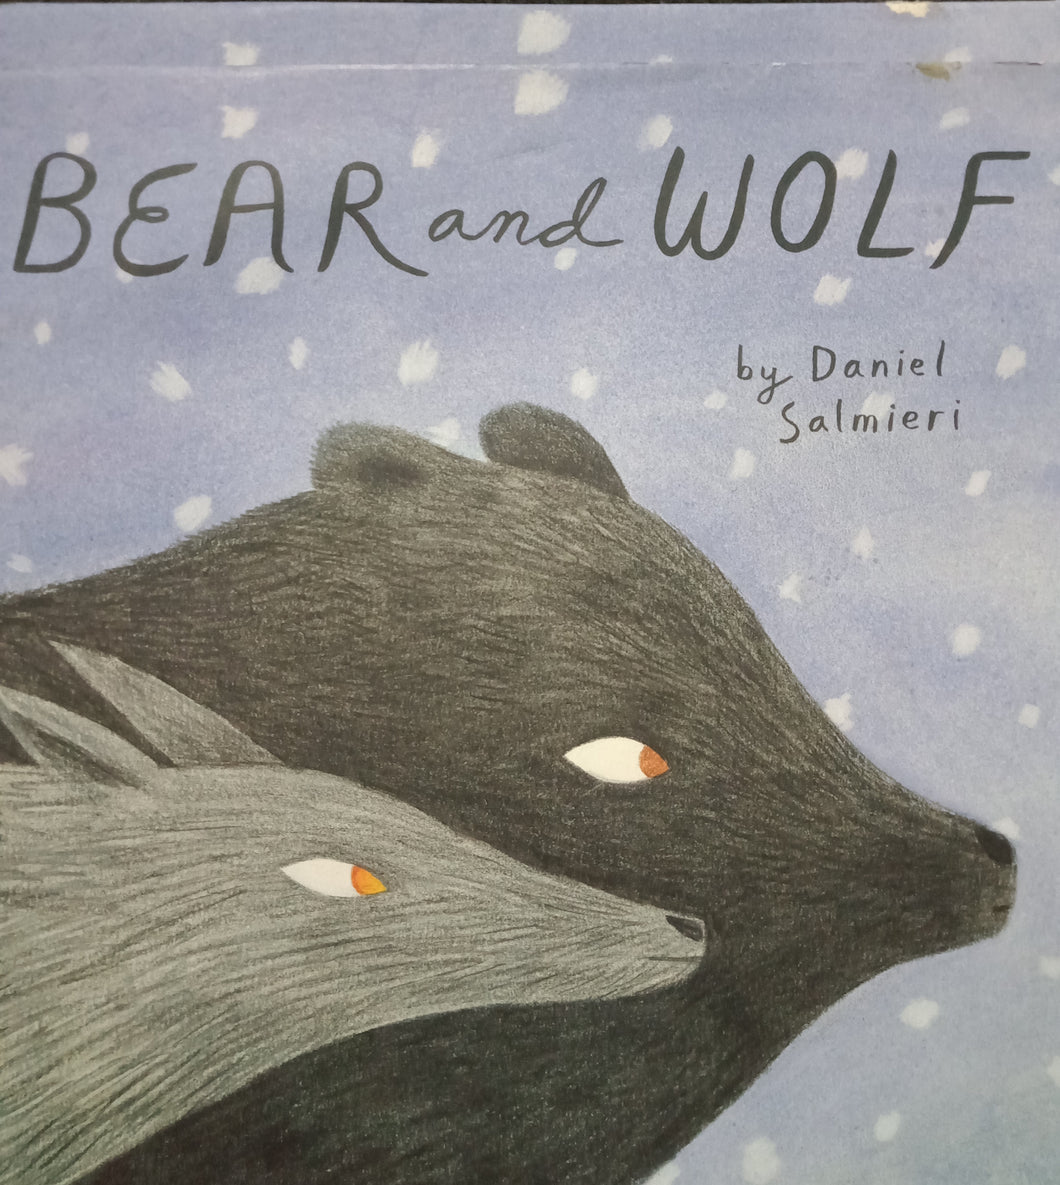 Bear And Wolf by Daniel Salmeri